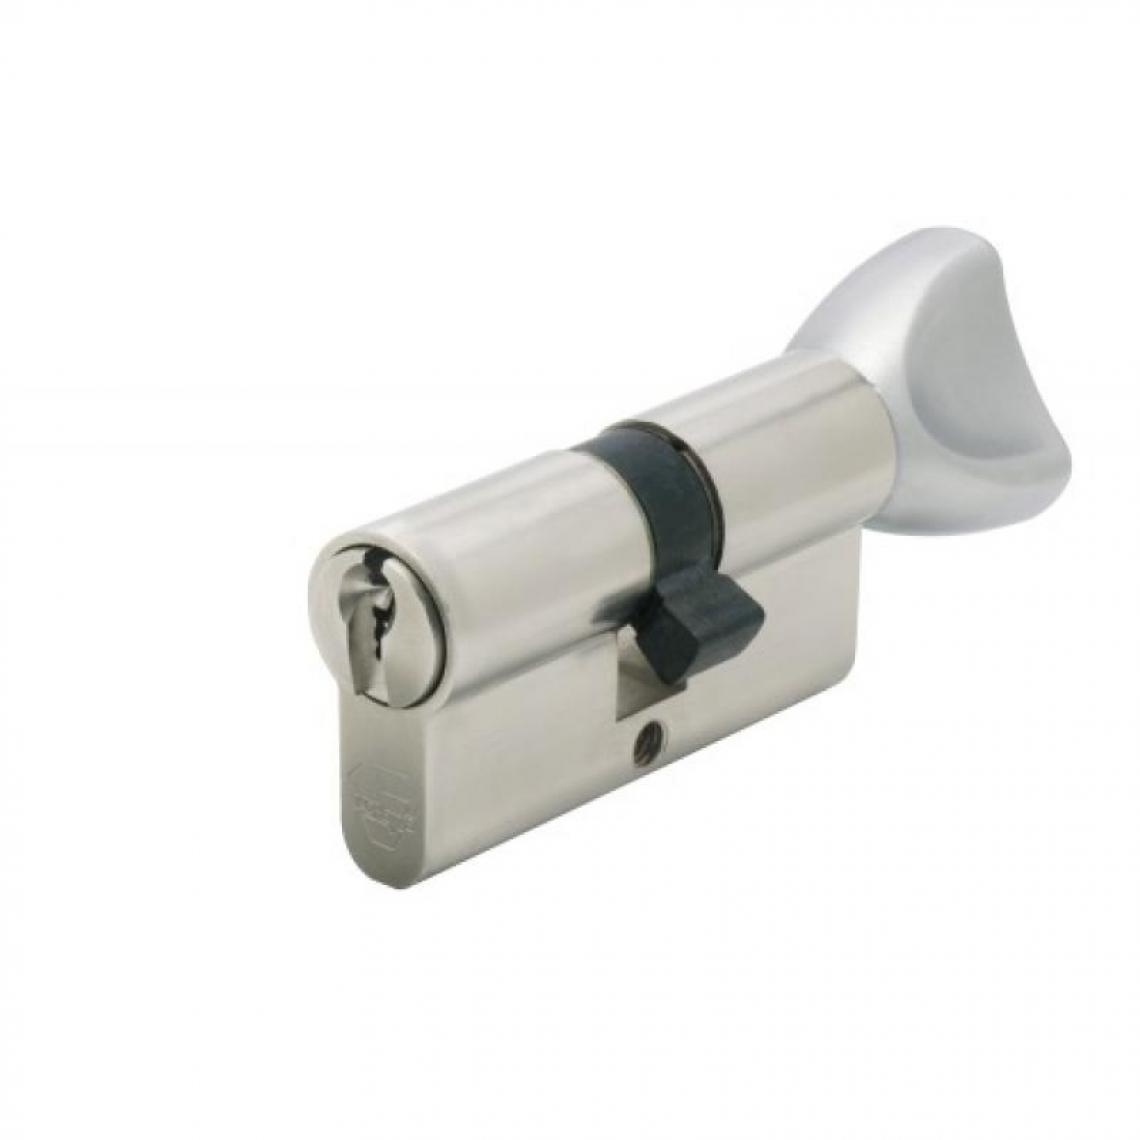 Vachette - Cylindre double à bouton breveté type Néo à clé protégée varié 3 clés 30 x - Serrure